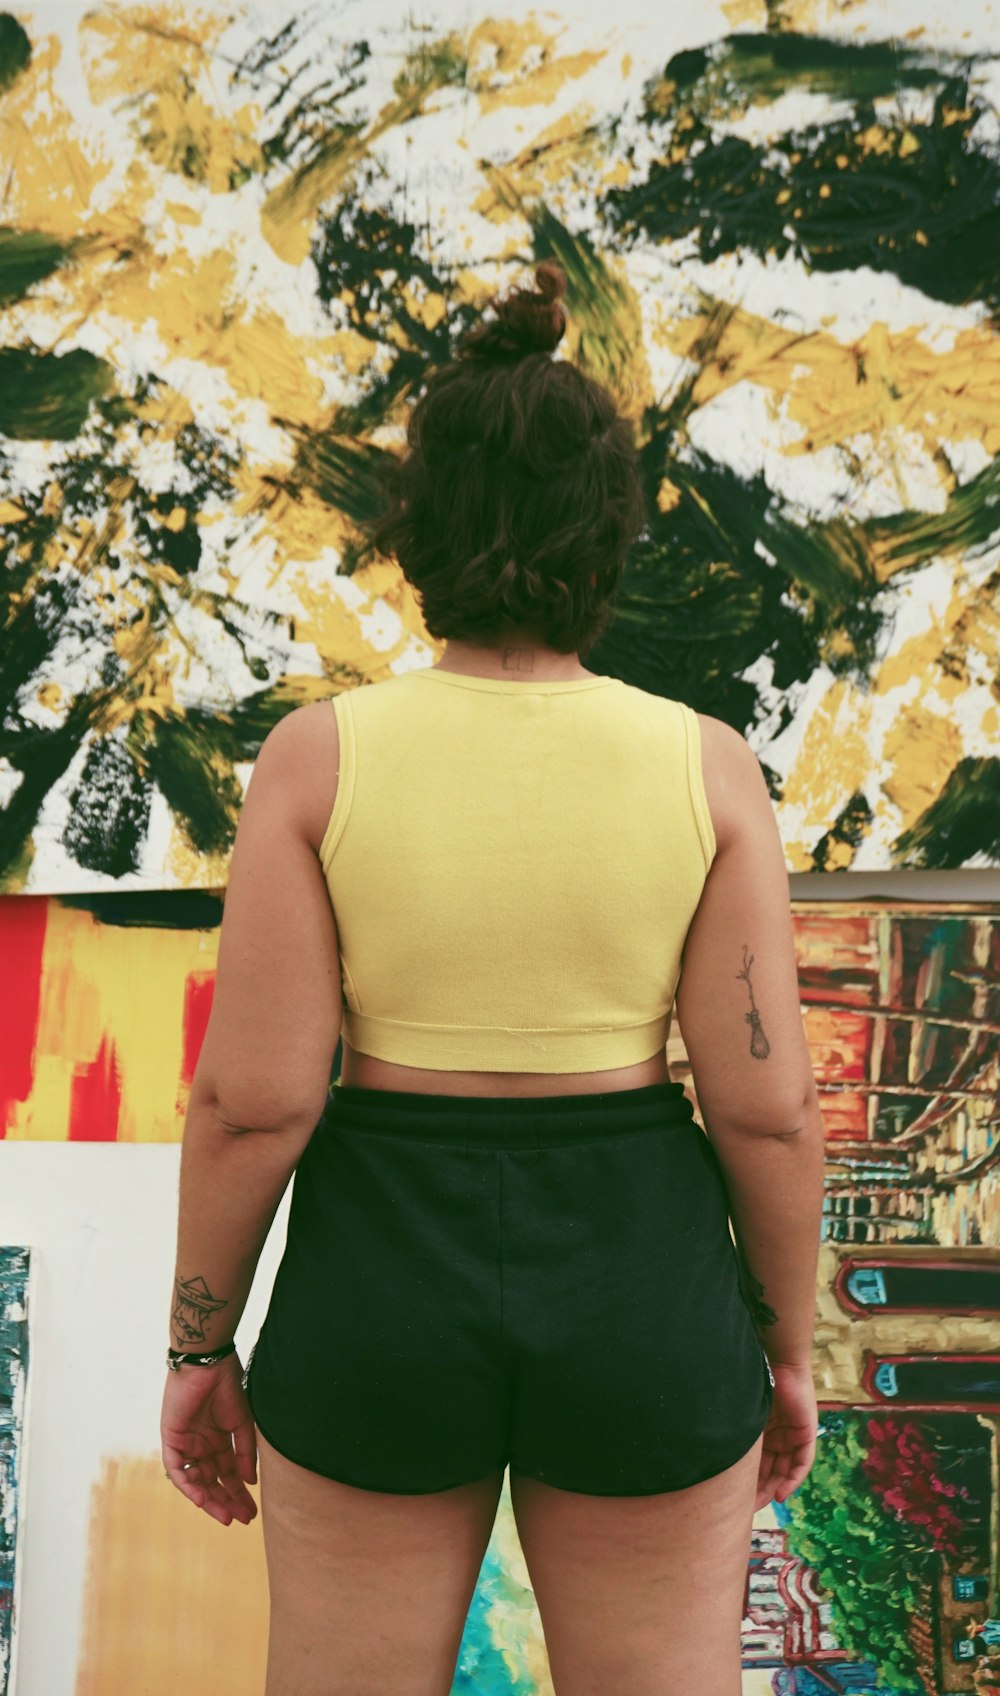 Stehende Frau mit gelbem Crop-Top und schwarzen Shorts